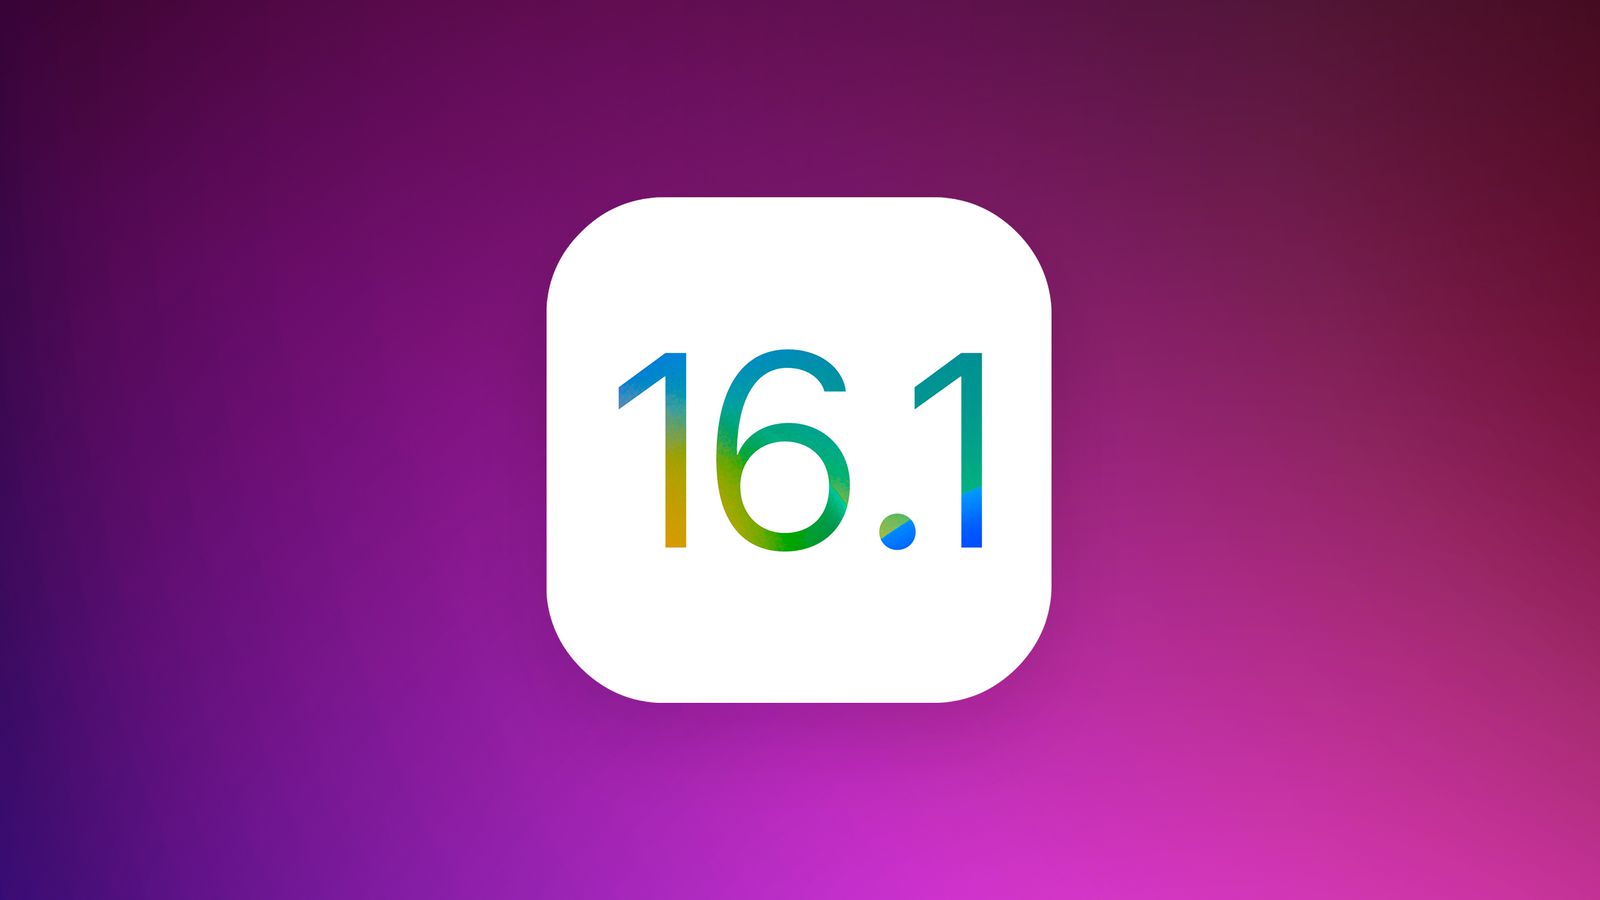 Вышла iOS 16.1 Beta 2, рассказываем обо всех новых функциях в системе